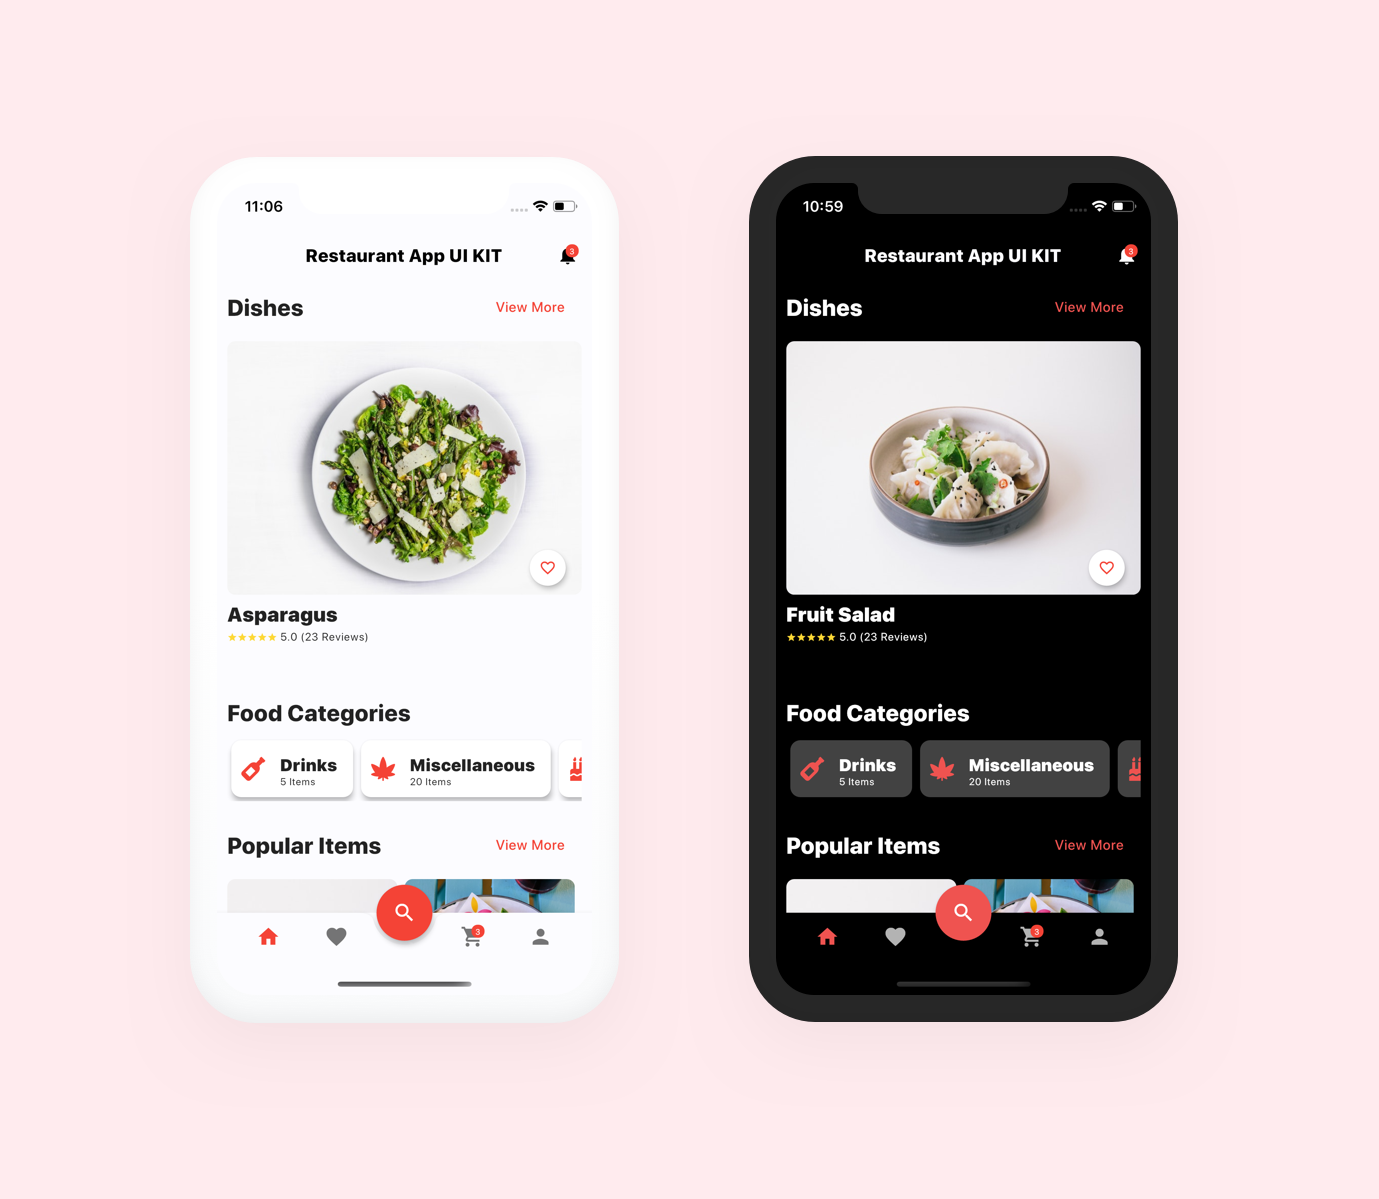 Restaurant App UI Kit - Flutter a full Restaurant app - 1